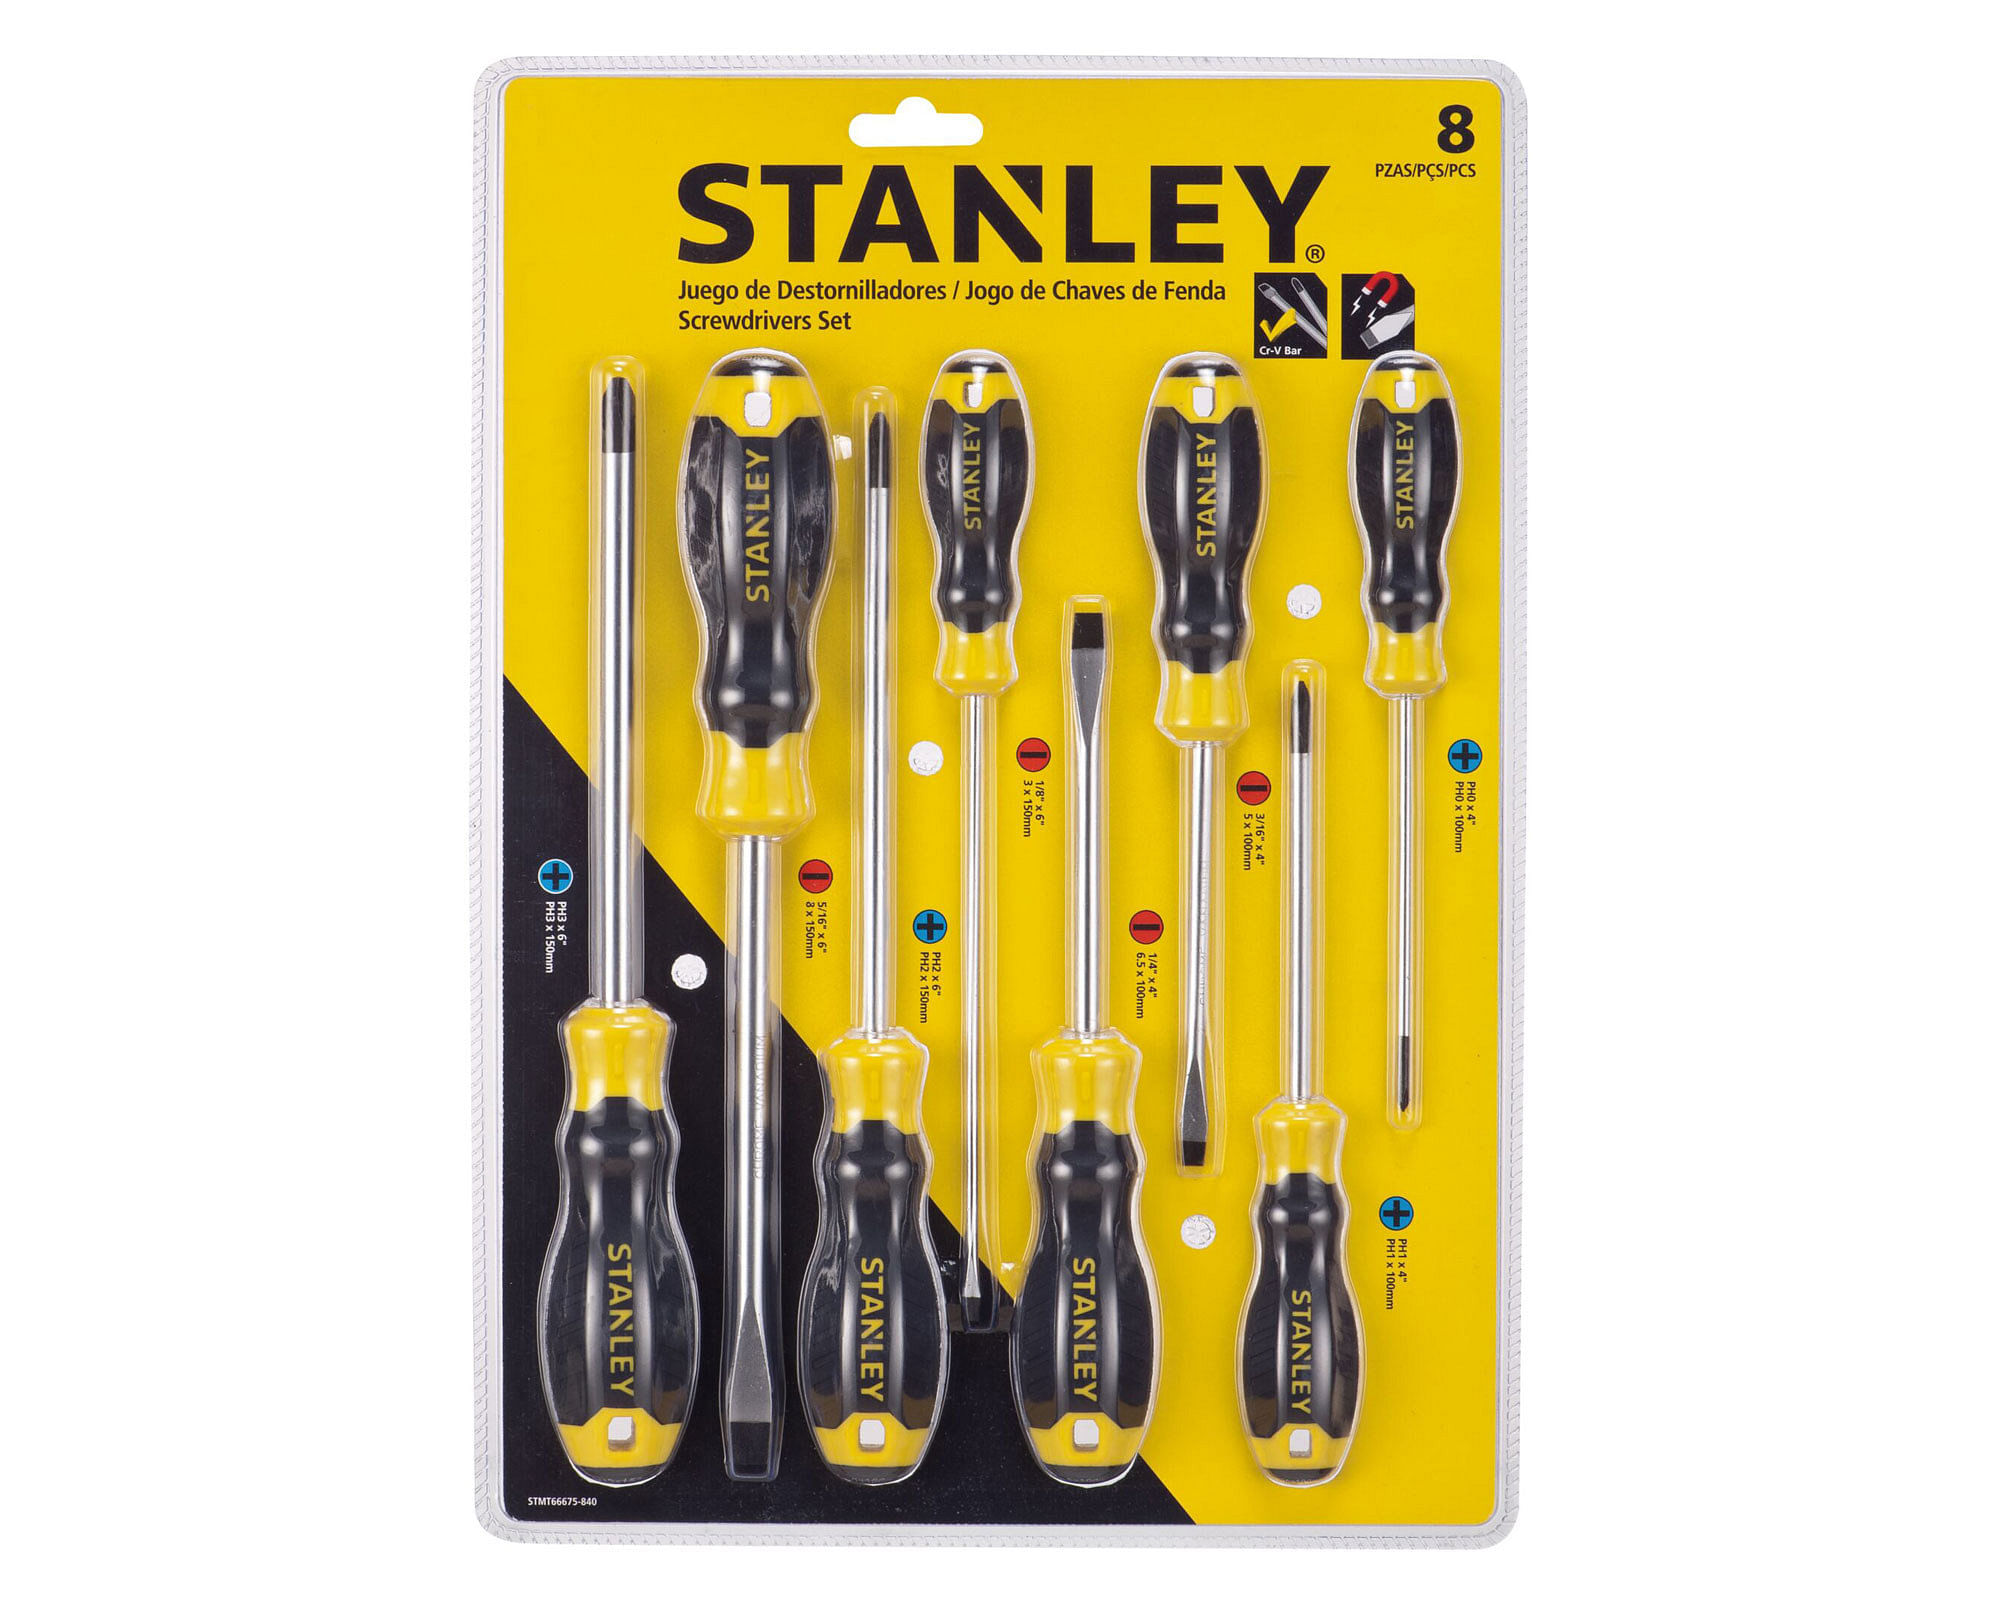 Juego destornilladores STMT66675-840 8 piezas Stanley.